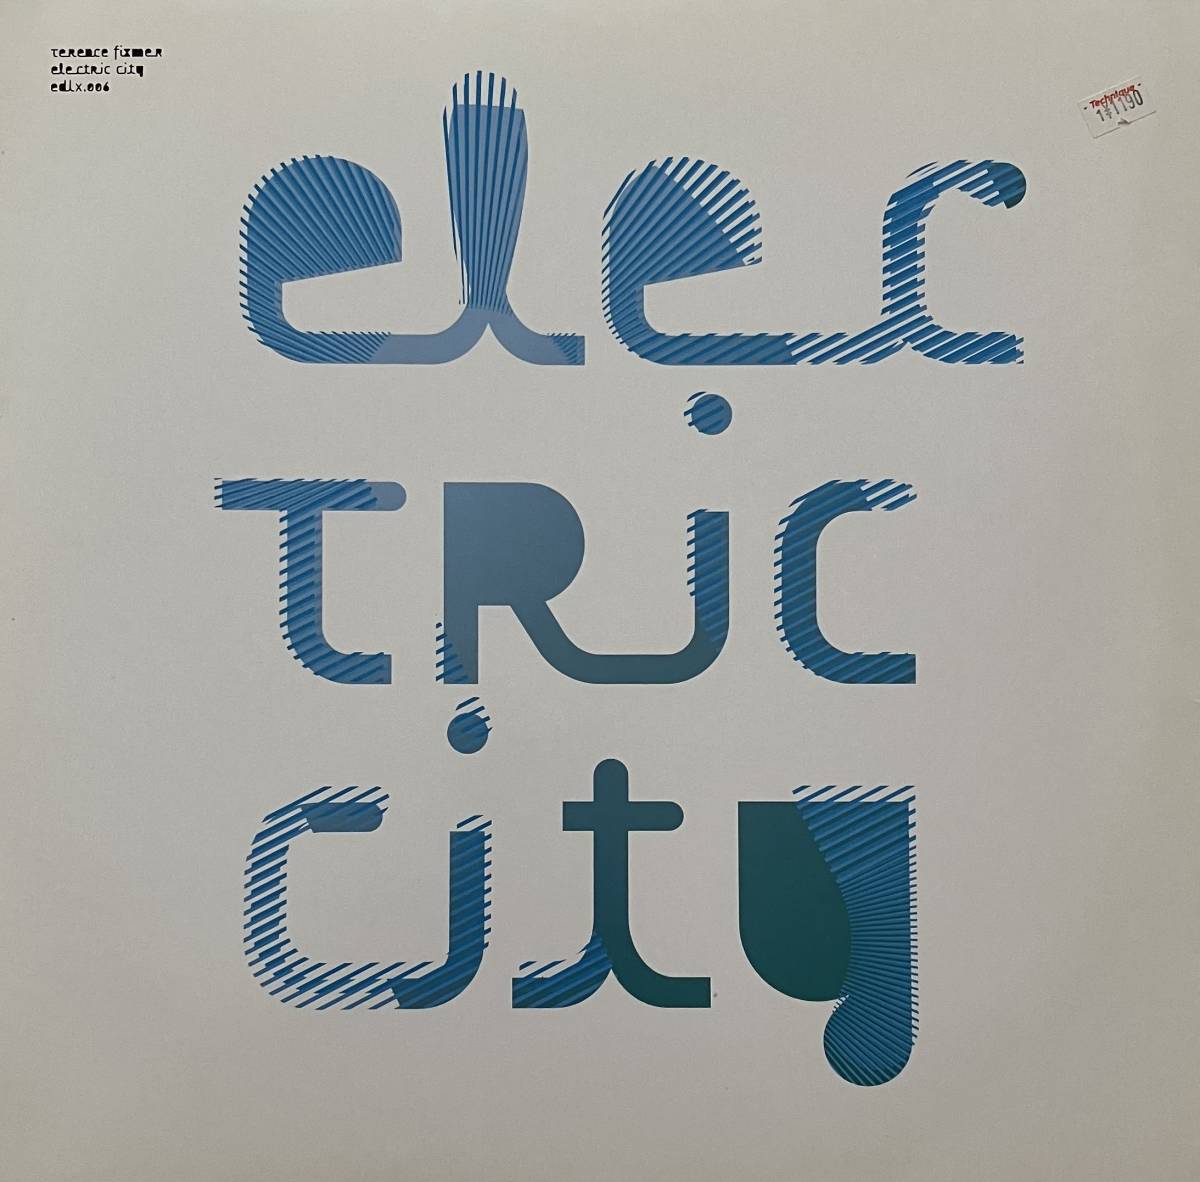 [ 12 / レコード ] Terence Fixmer / Electric City ( Techno / Industrial ) Electric Deluxe Function Remix テクノ インダストリアル_画像1